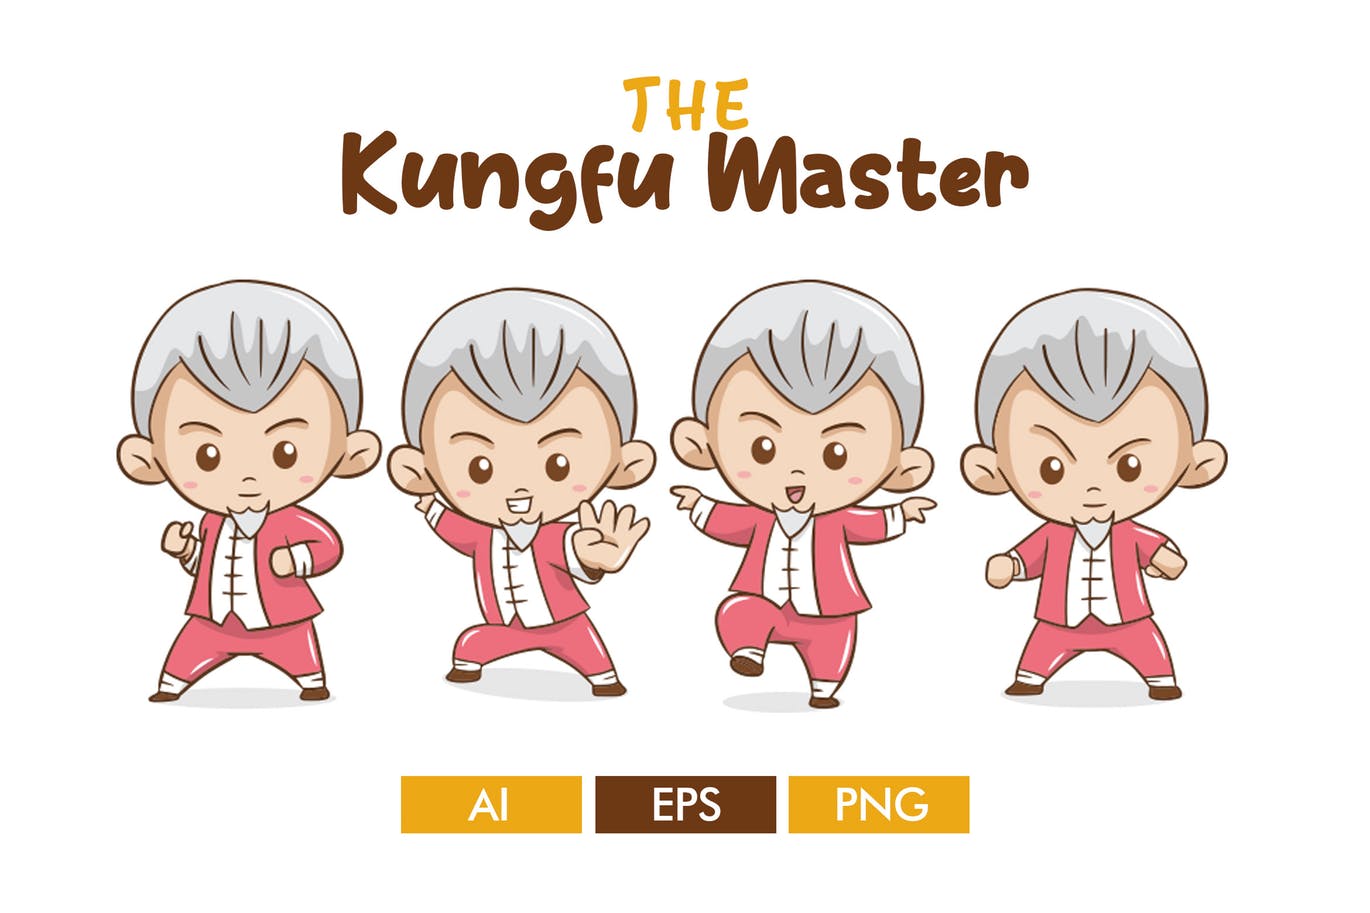 卡通形象功夫大师矢量素材库精选设计素材 The Kungfu Master插图